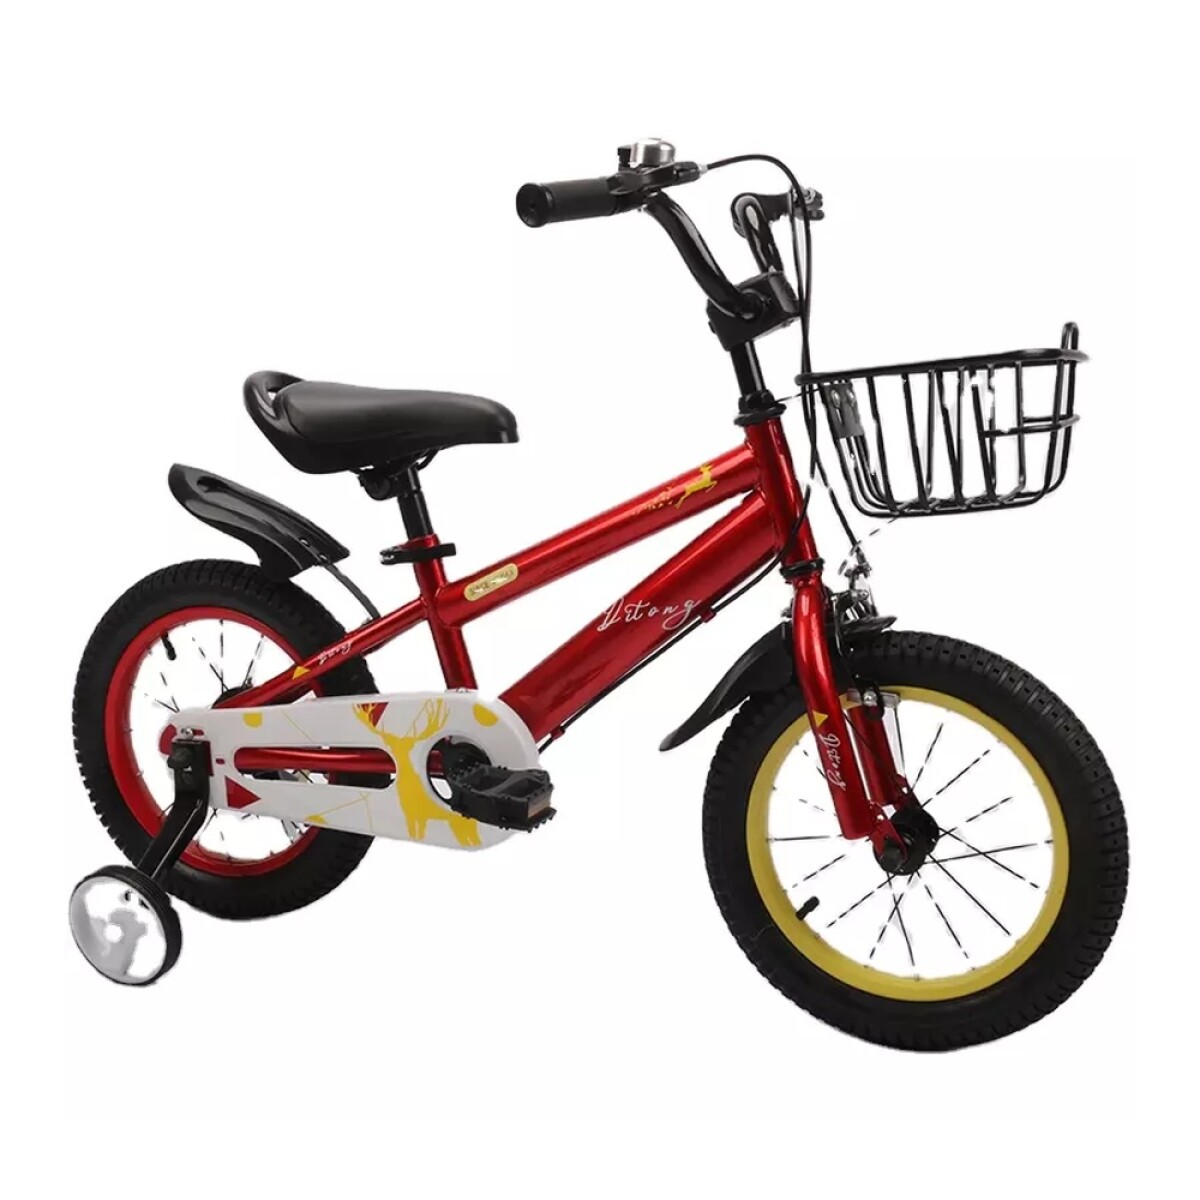 Bicicleta Infantil Rodado 16 para Niños Canasto y Rueditas - Rojo 